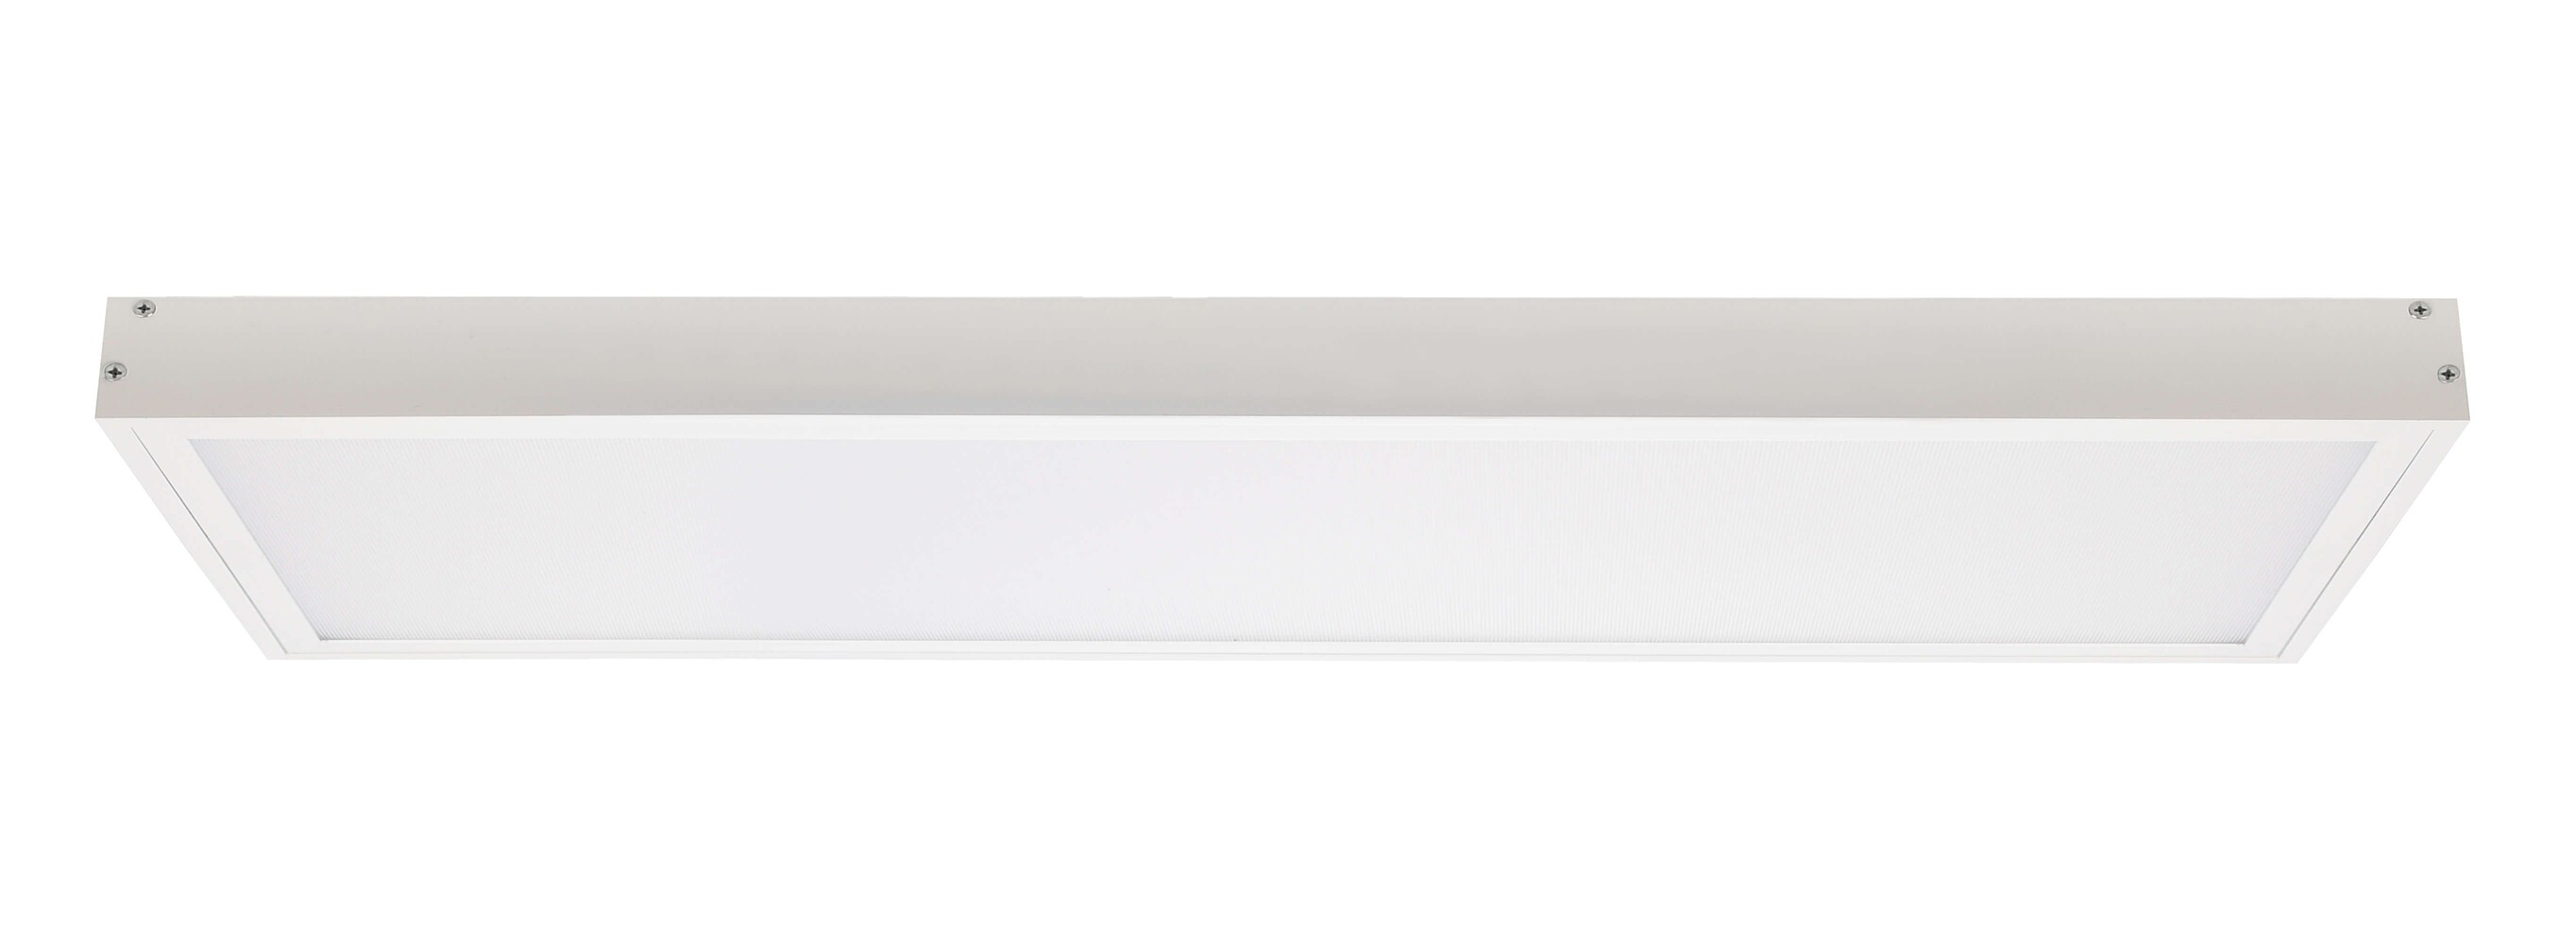 Qualitativ hochwertiges LED Panel von Deko-Light in Weiß